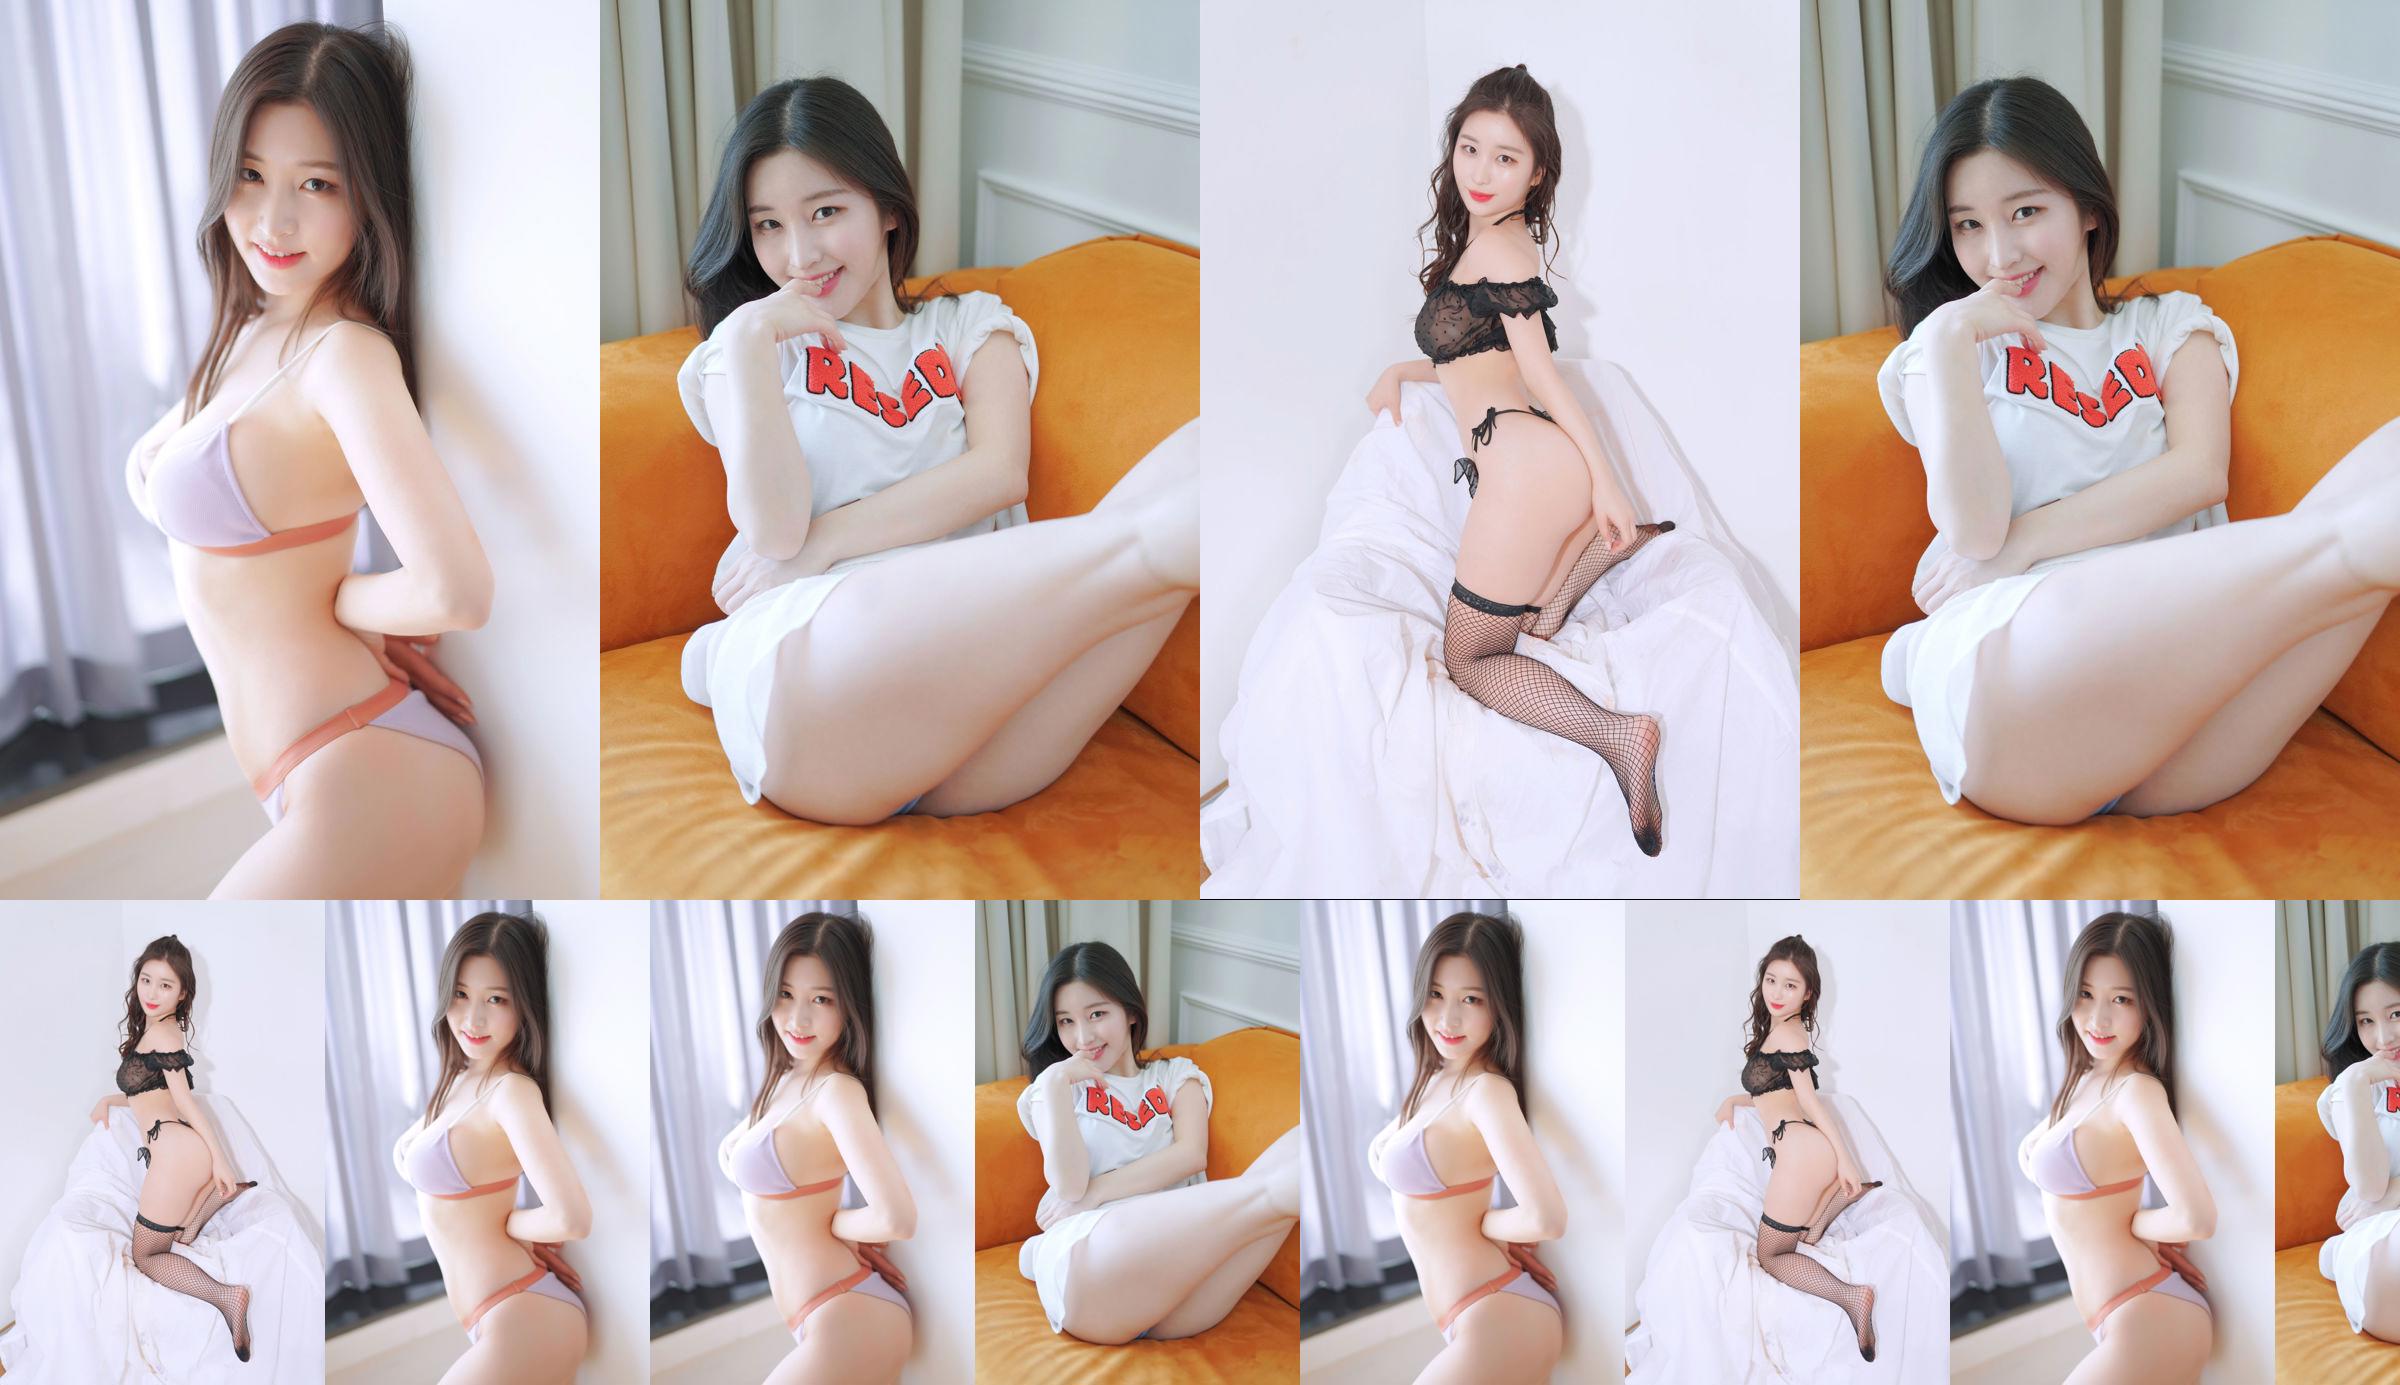 [Bosque rosa] - Najung Vol.1 Sunny Side - Kim Na Jung No.fb8950 Página 2